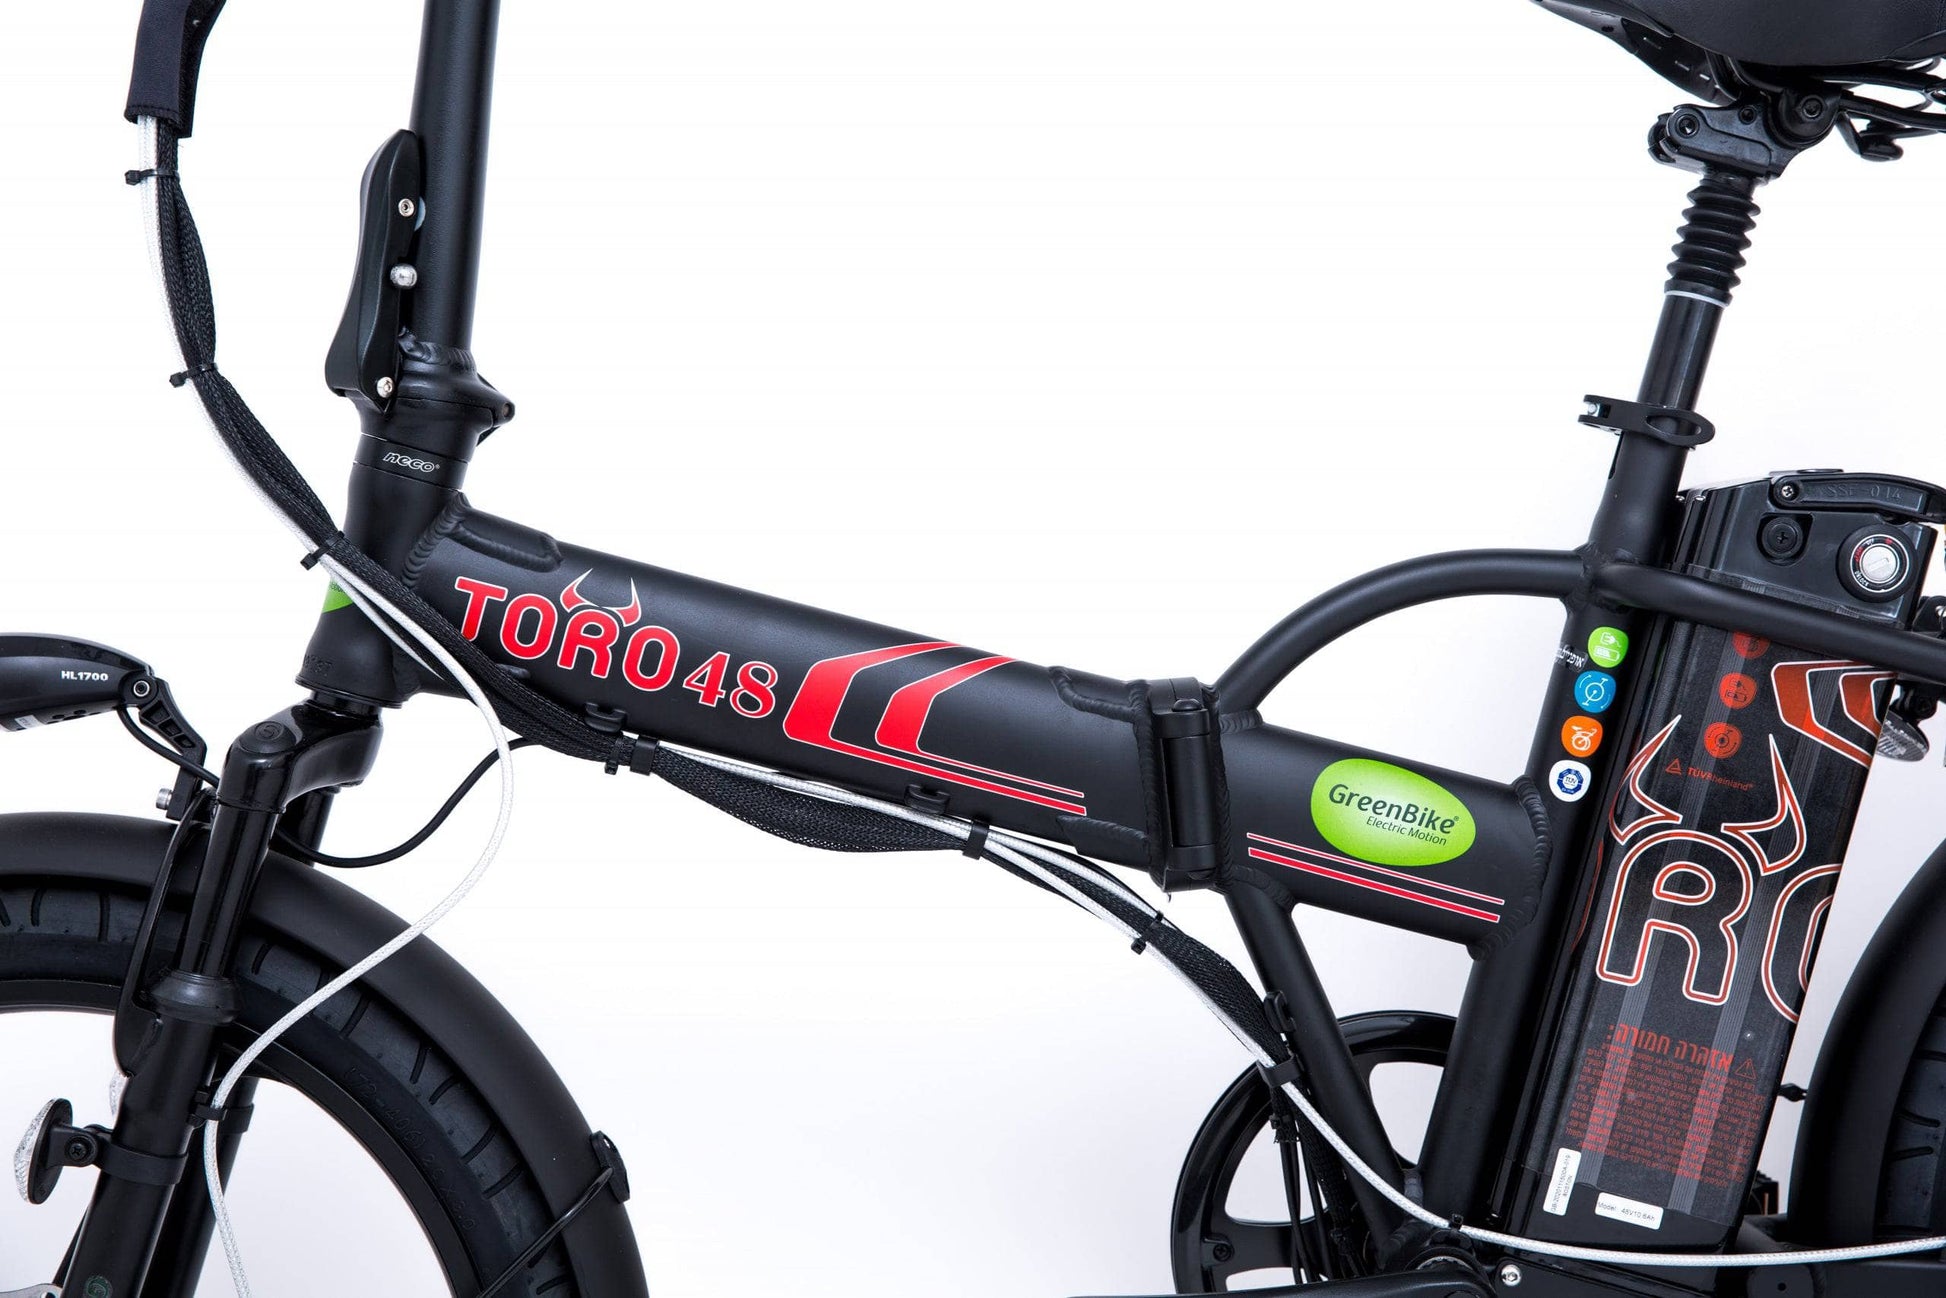 GreenBike Electric Motion Black/Red GreenBike TORO 48v 350W Folding Electric Bike